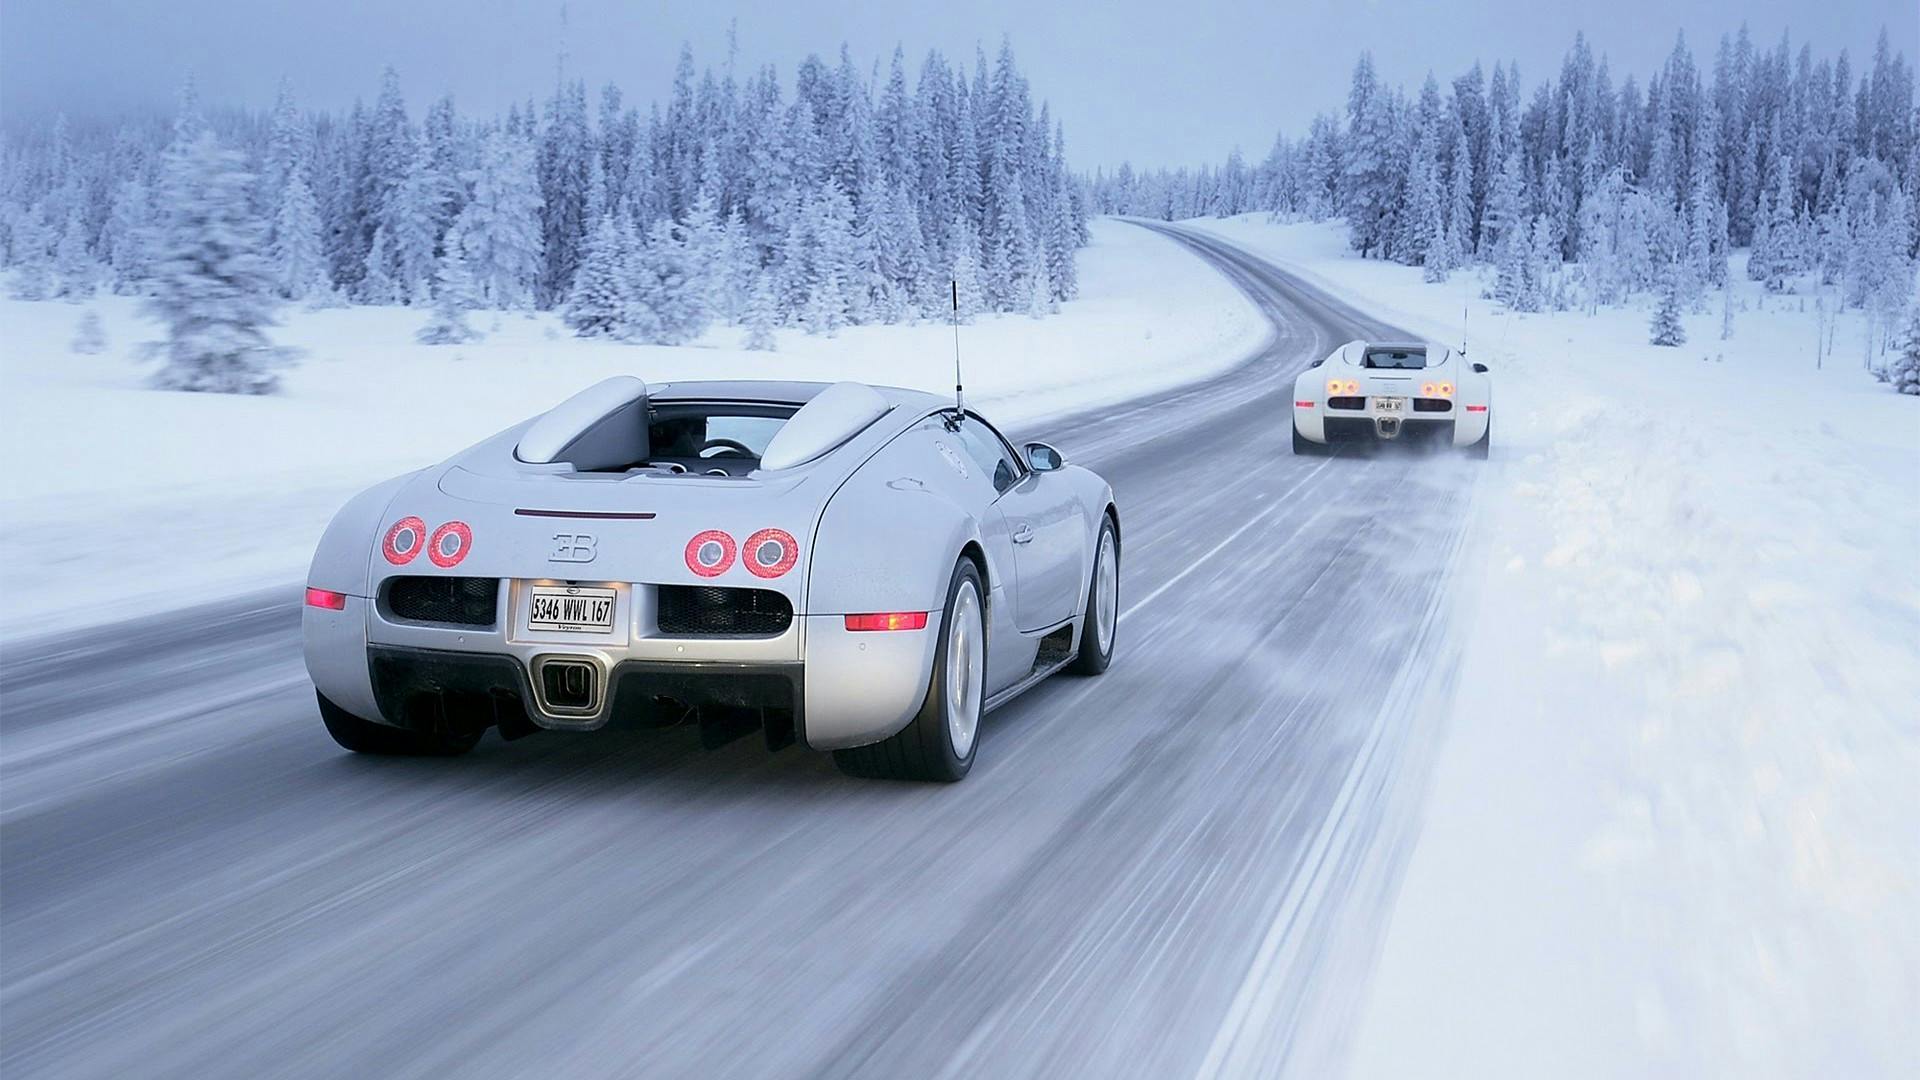 Pneumatico auto su pista da sci per guida sulla neve